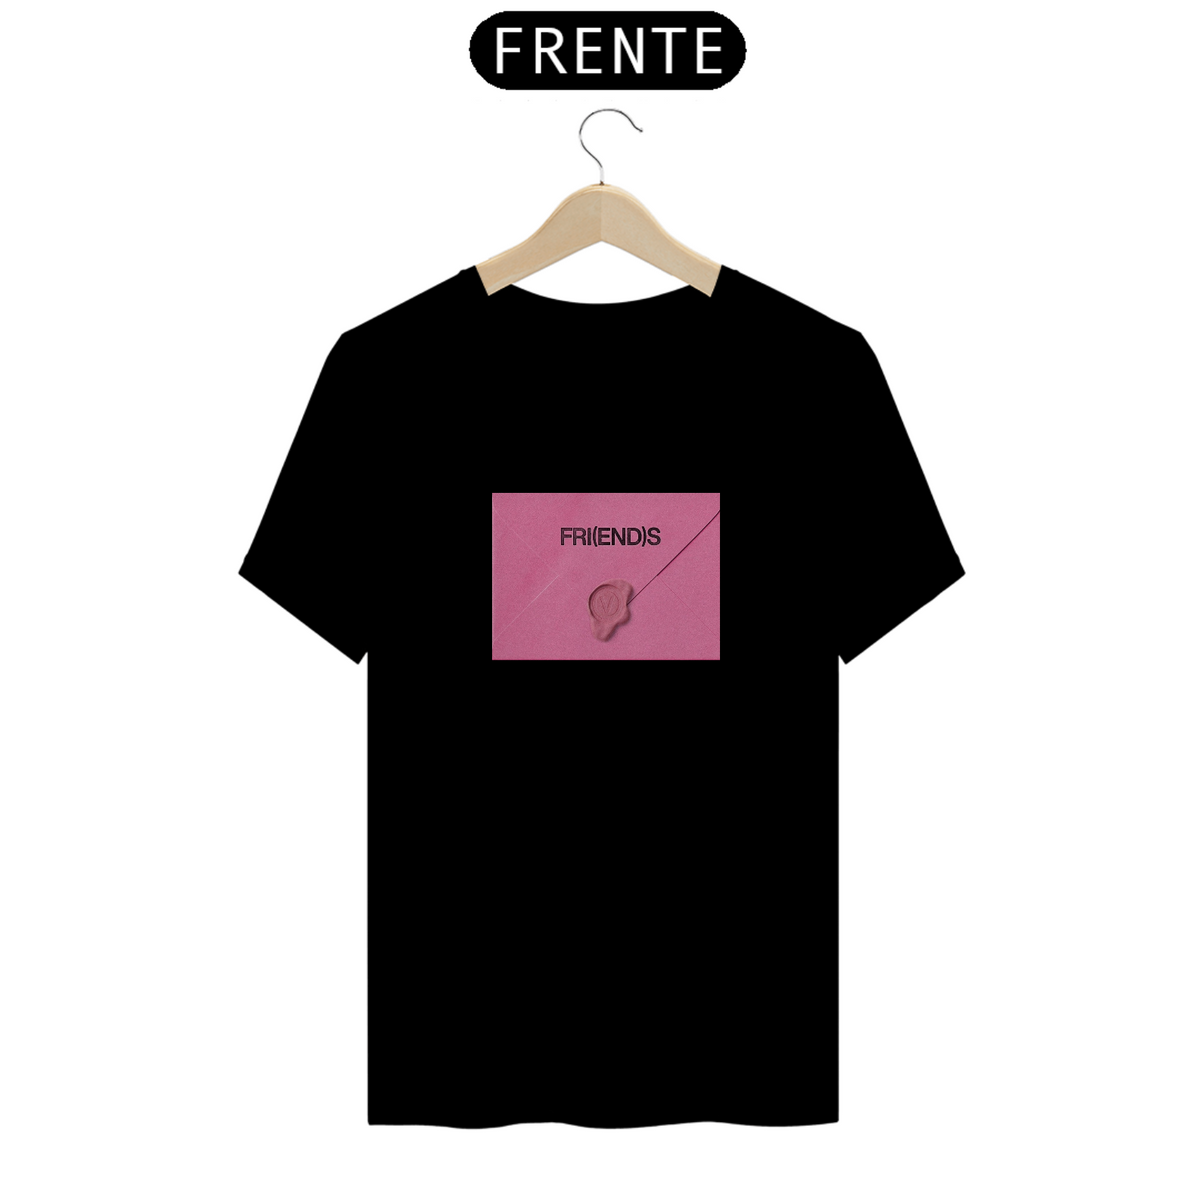 Nome do produto: T-Shirt Friends